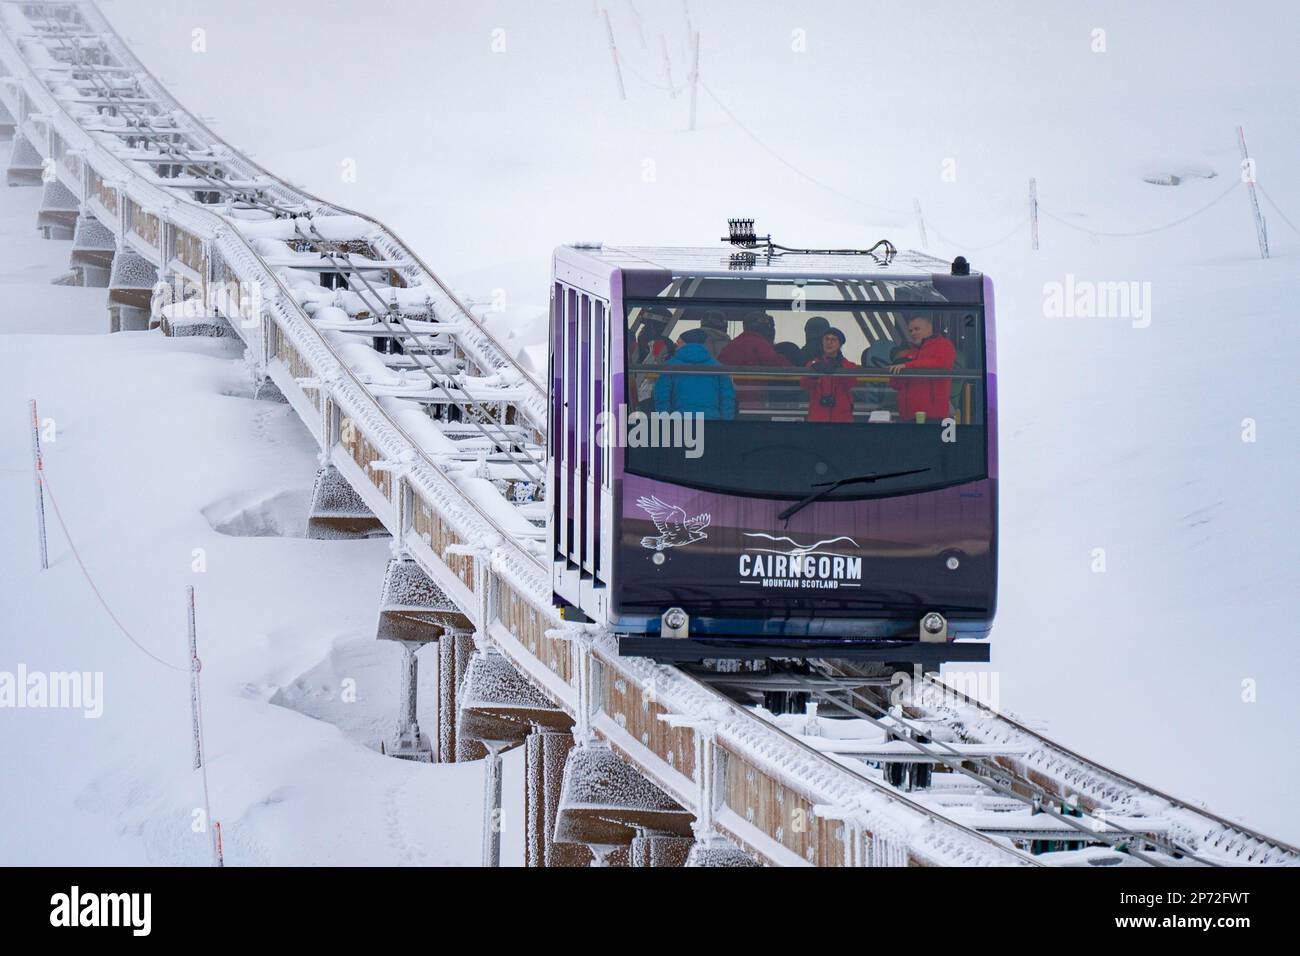 Die neu eröffnete Seilbahn Cairngorm Mountain Railway bringt Skifahrer zu den Skipisten im Skigebiet Cairngorm in der Nähe von Aviemore, Schottland, Großbritannien Stockfoto